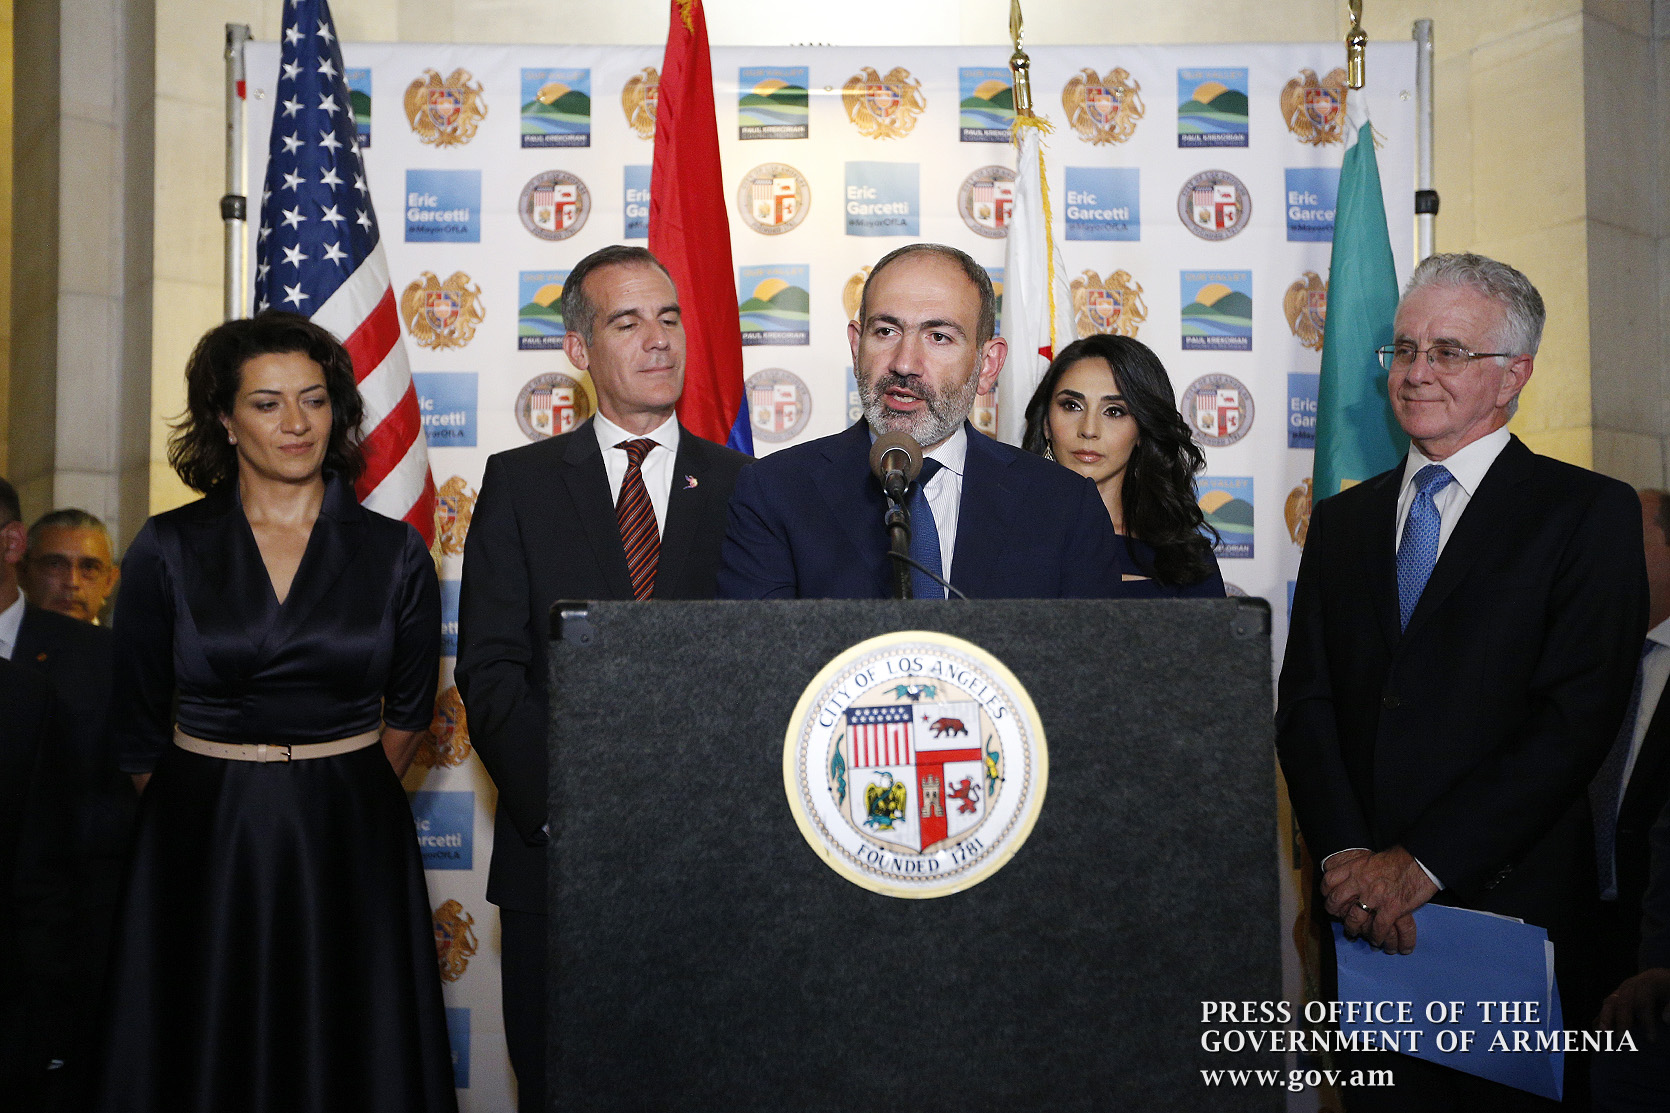 Լոս Անջելեսը կլինի հայ-կալիֆորնիական համագործակցության խորացման կիզակետը. վարչապետ